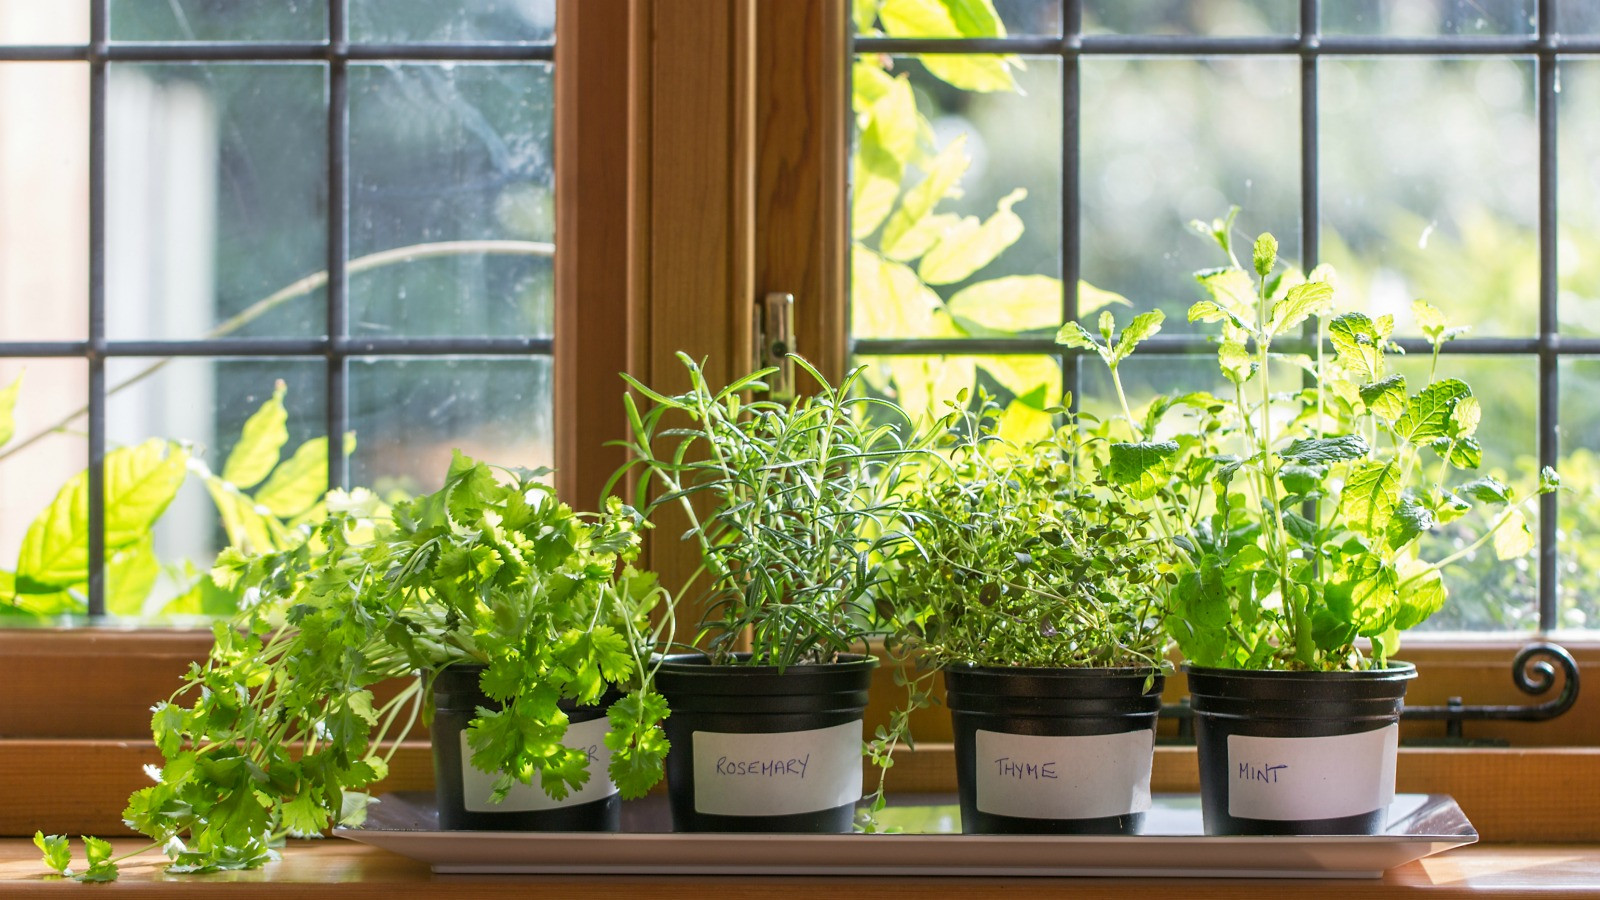 Best ideas about DIY Indoor Herb Garden
. Save or Pin DIY Indoor Herb Garden Start Your Own Today Now.